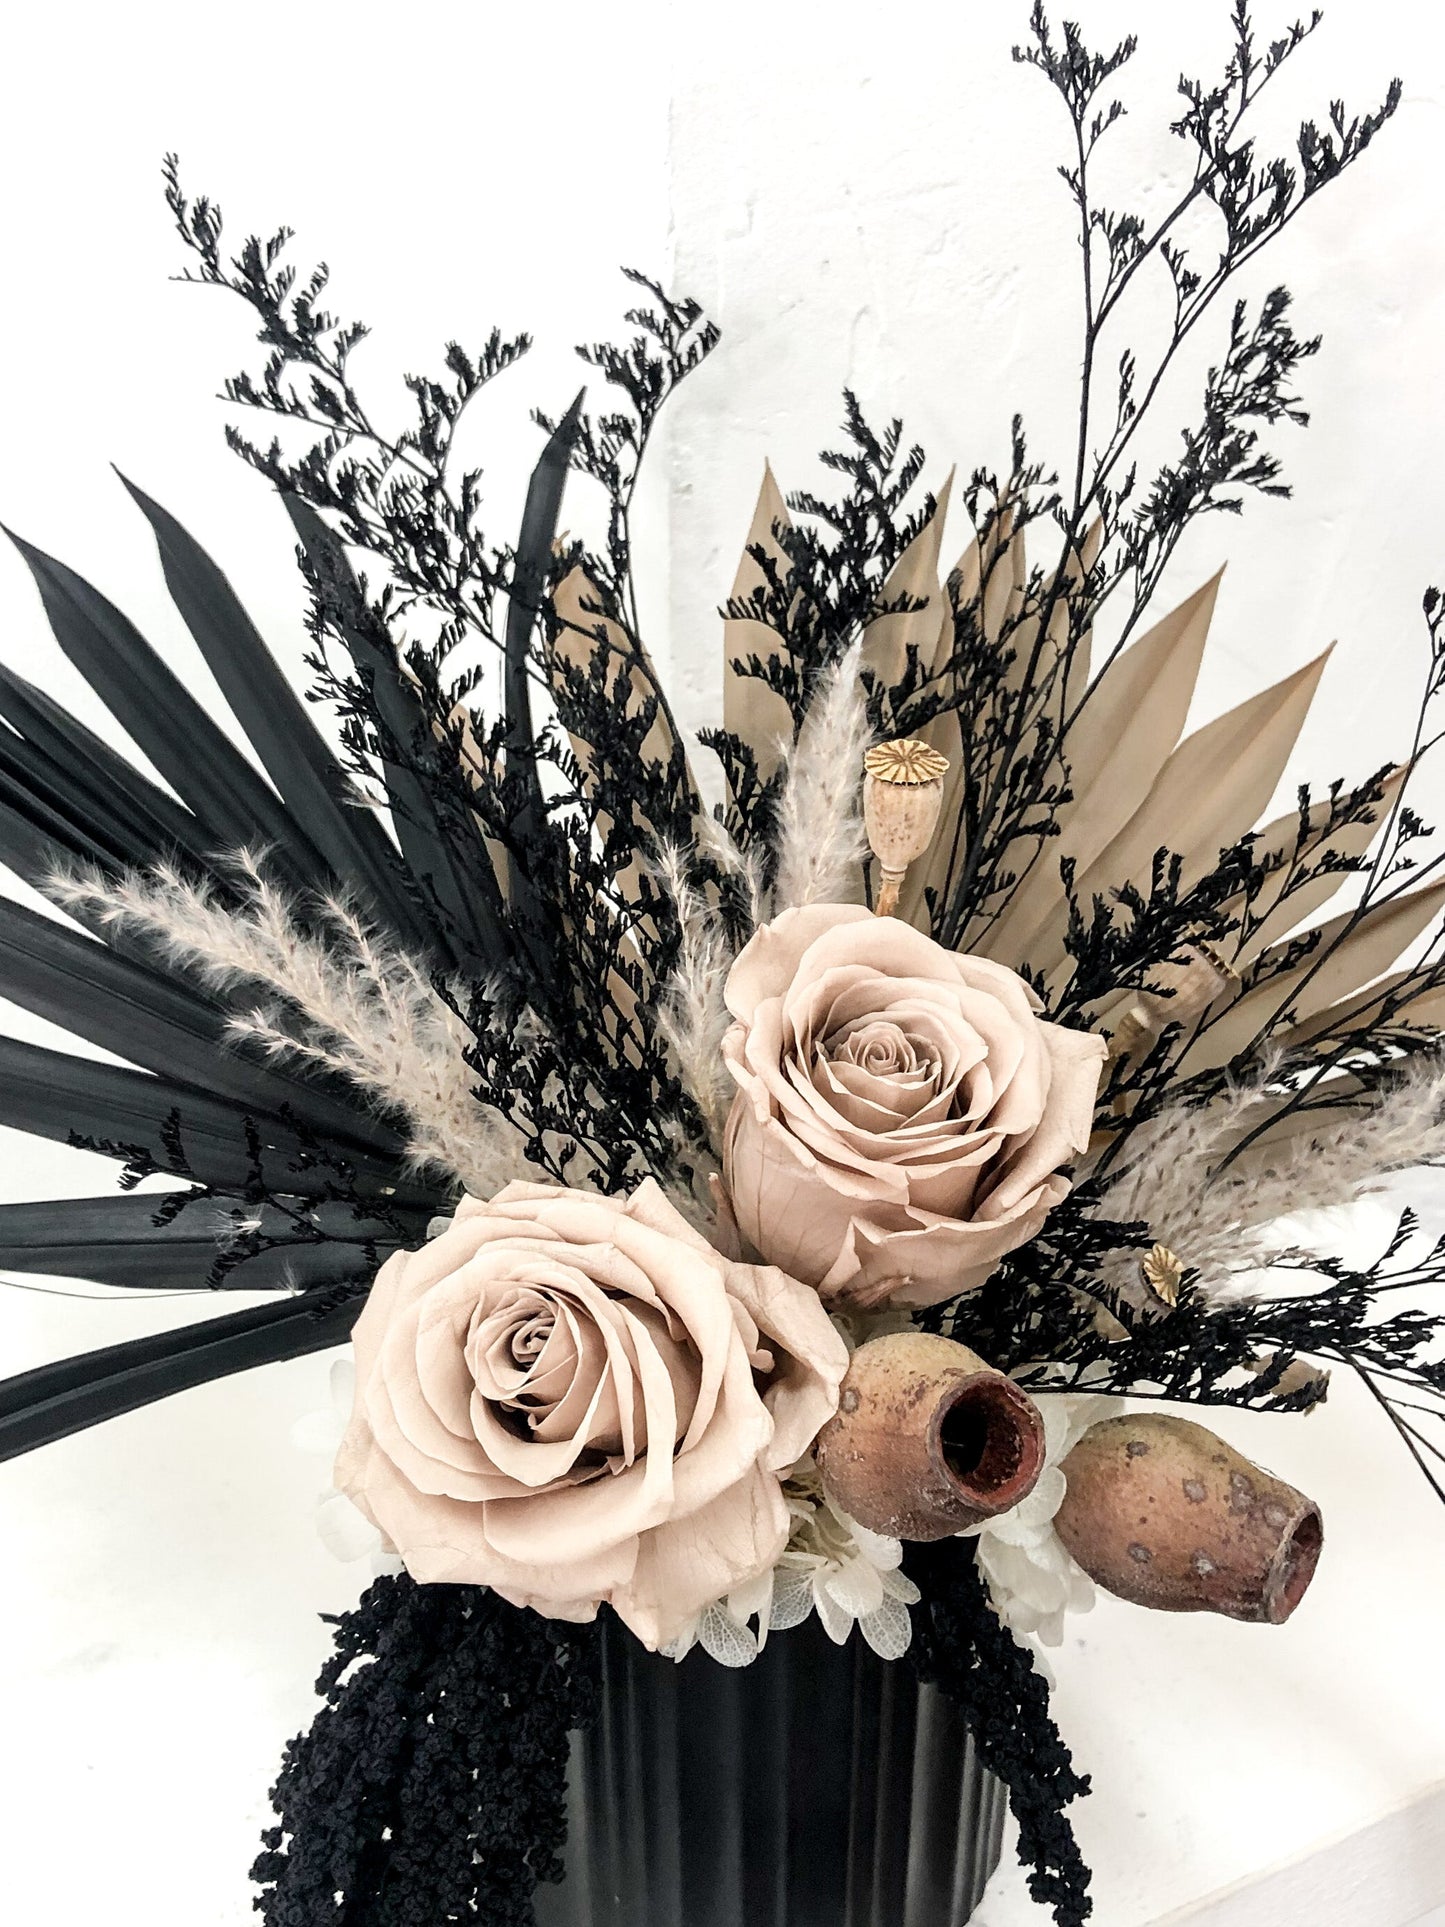 Black Beauty // By Newcastle Dried Flower Co